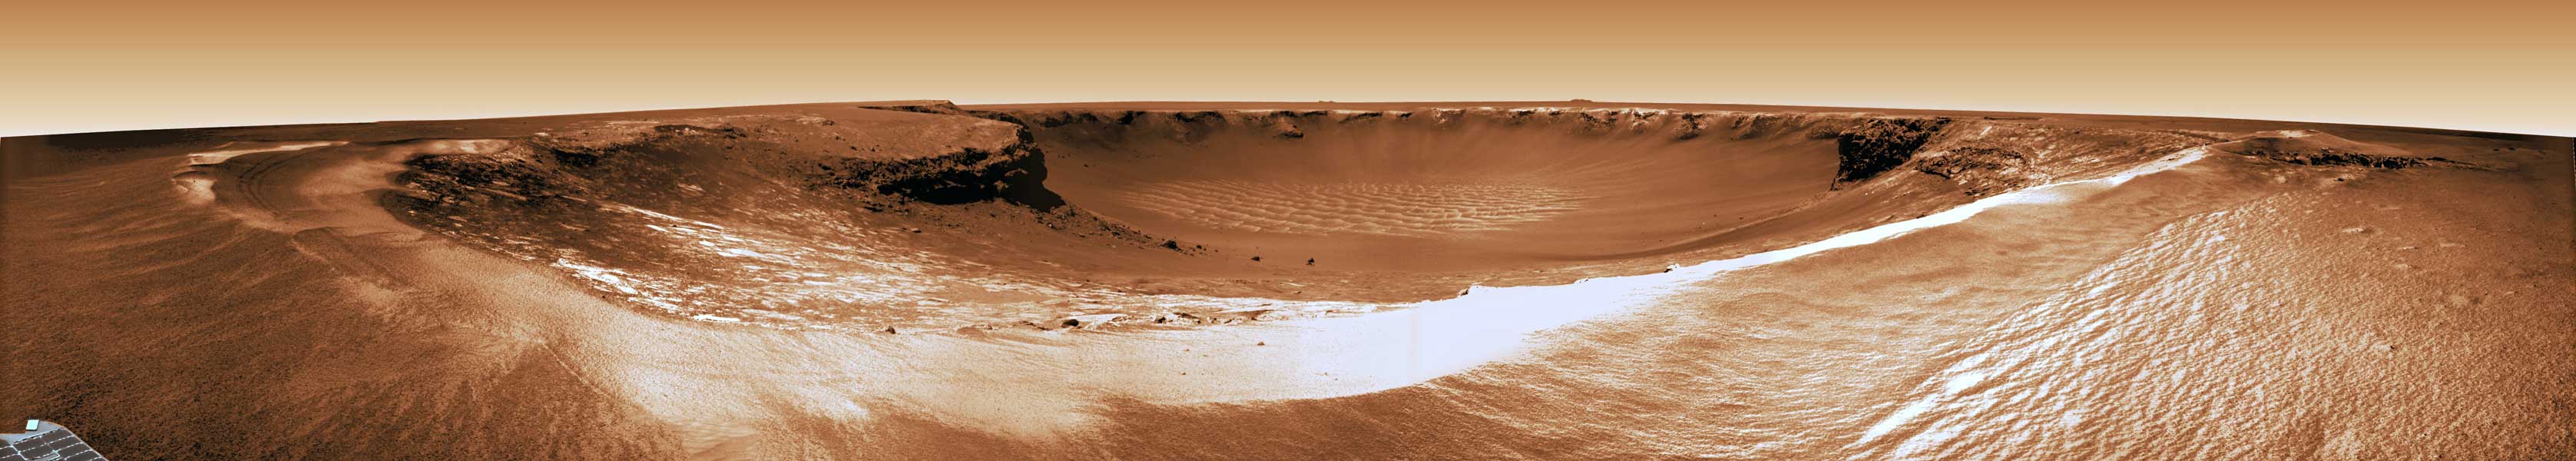 Cráter Victoria en Marte